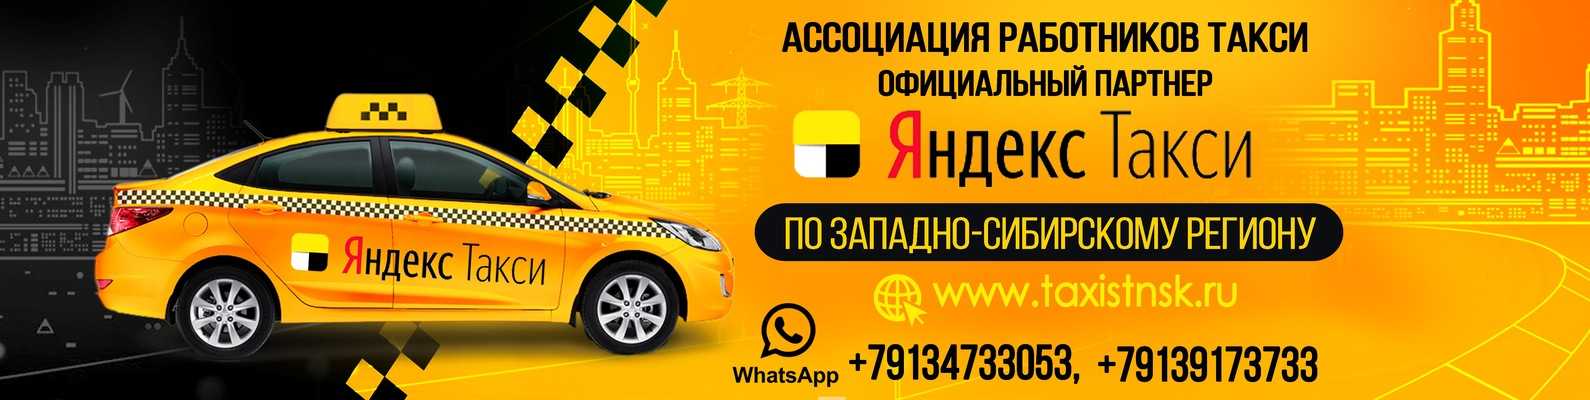 Сколько такси в новосибирске. Номер такси в Новосибирске. Работники такси. Персонал такси.